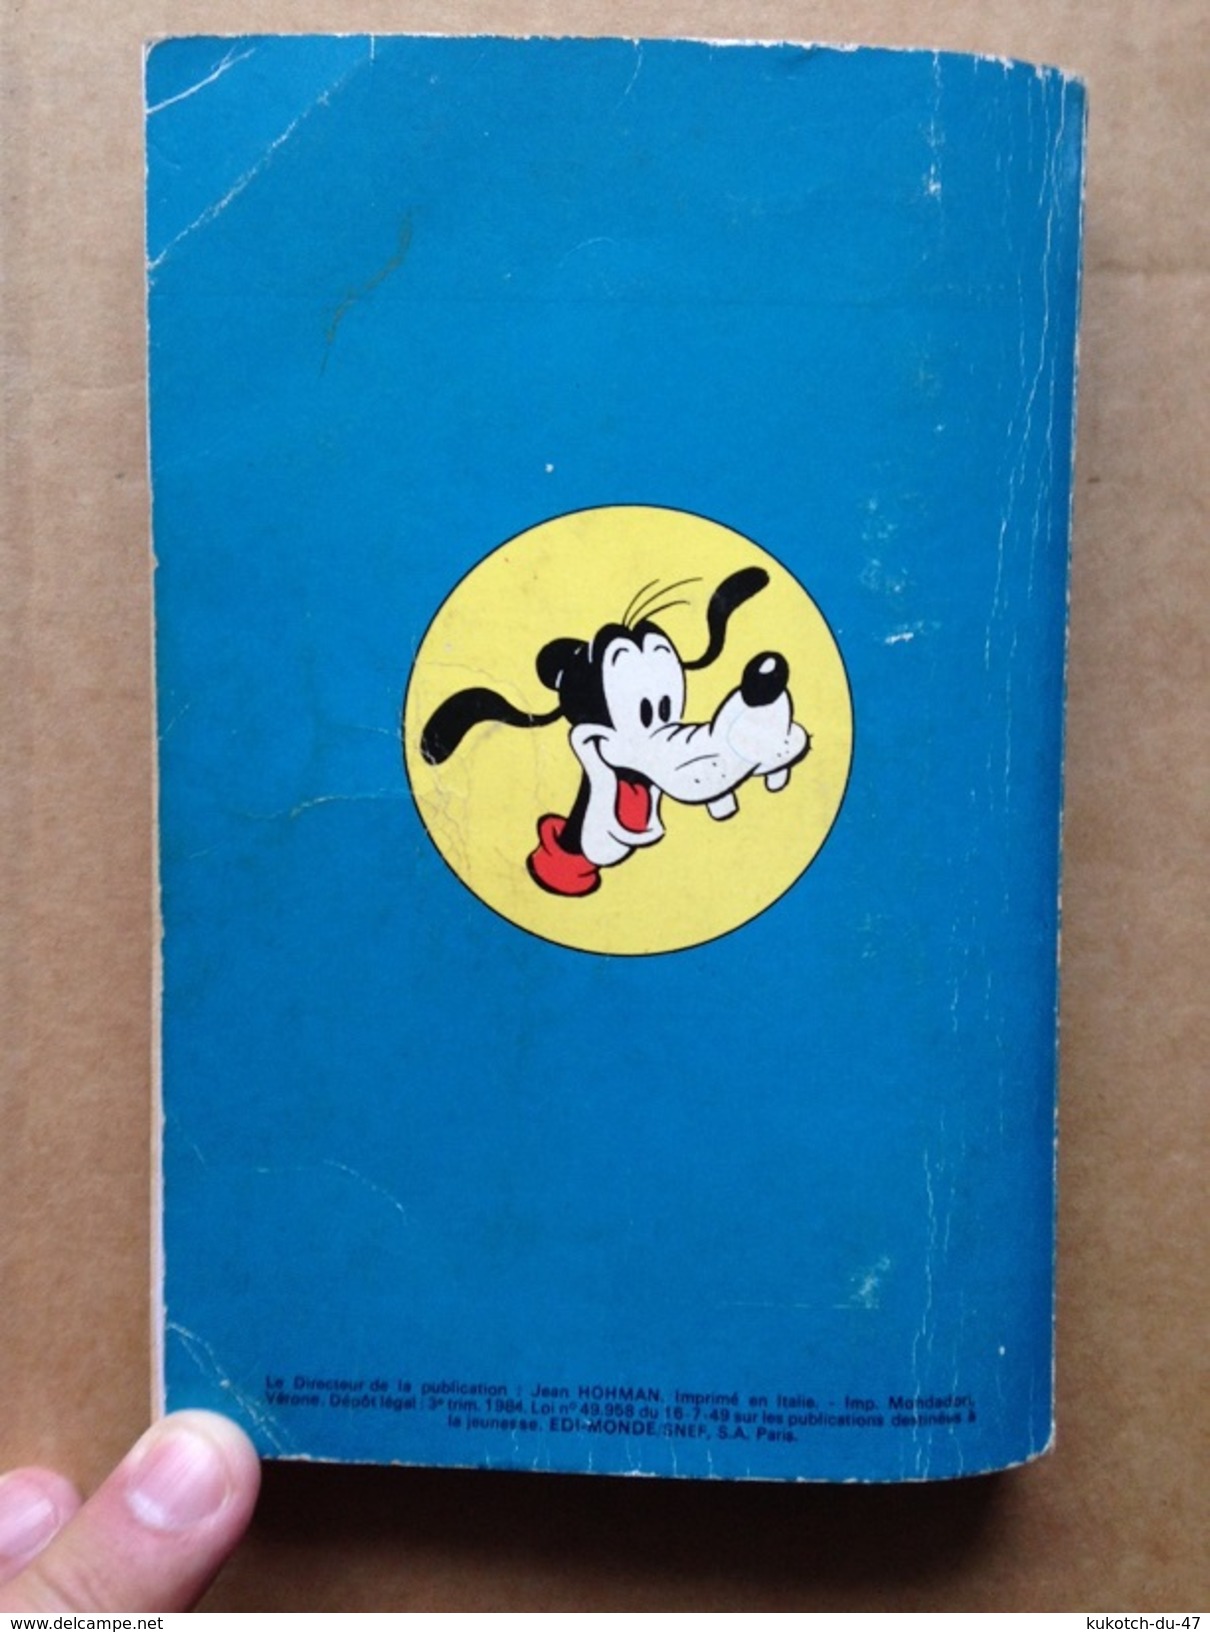 Disney - Mickey Parade - Année 1984 - N°56 (avec grand défaut d'usure)